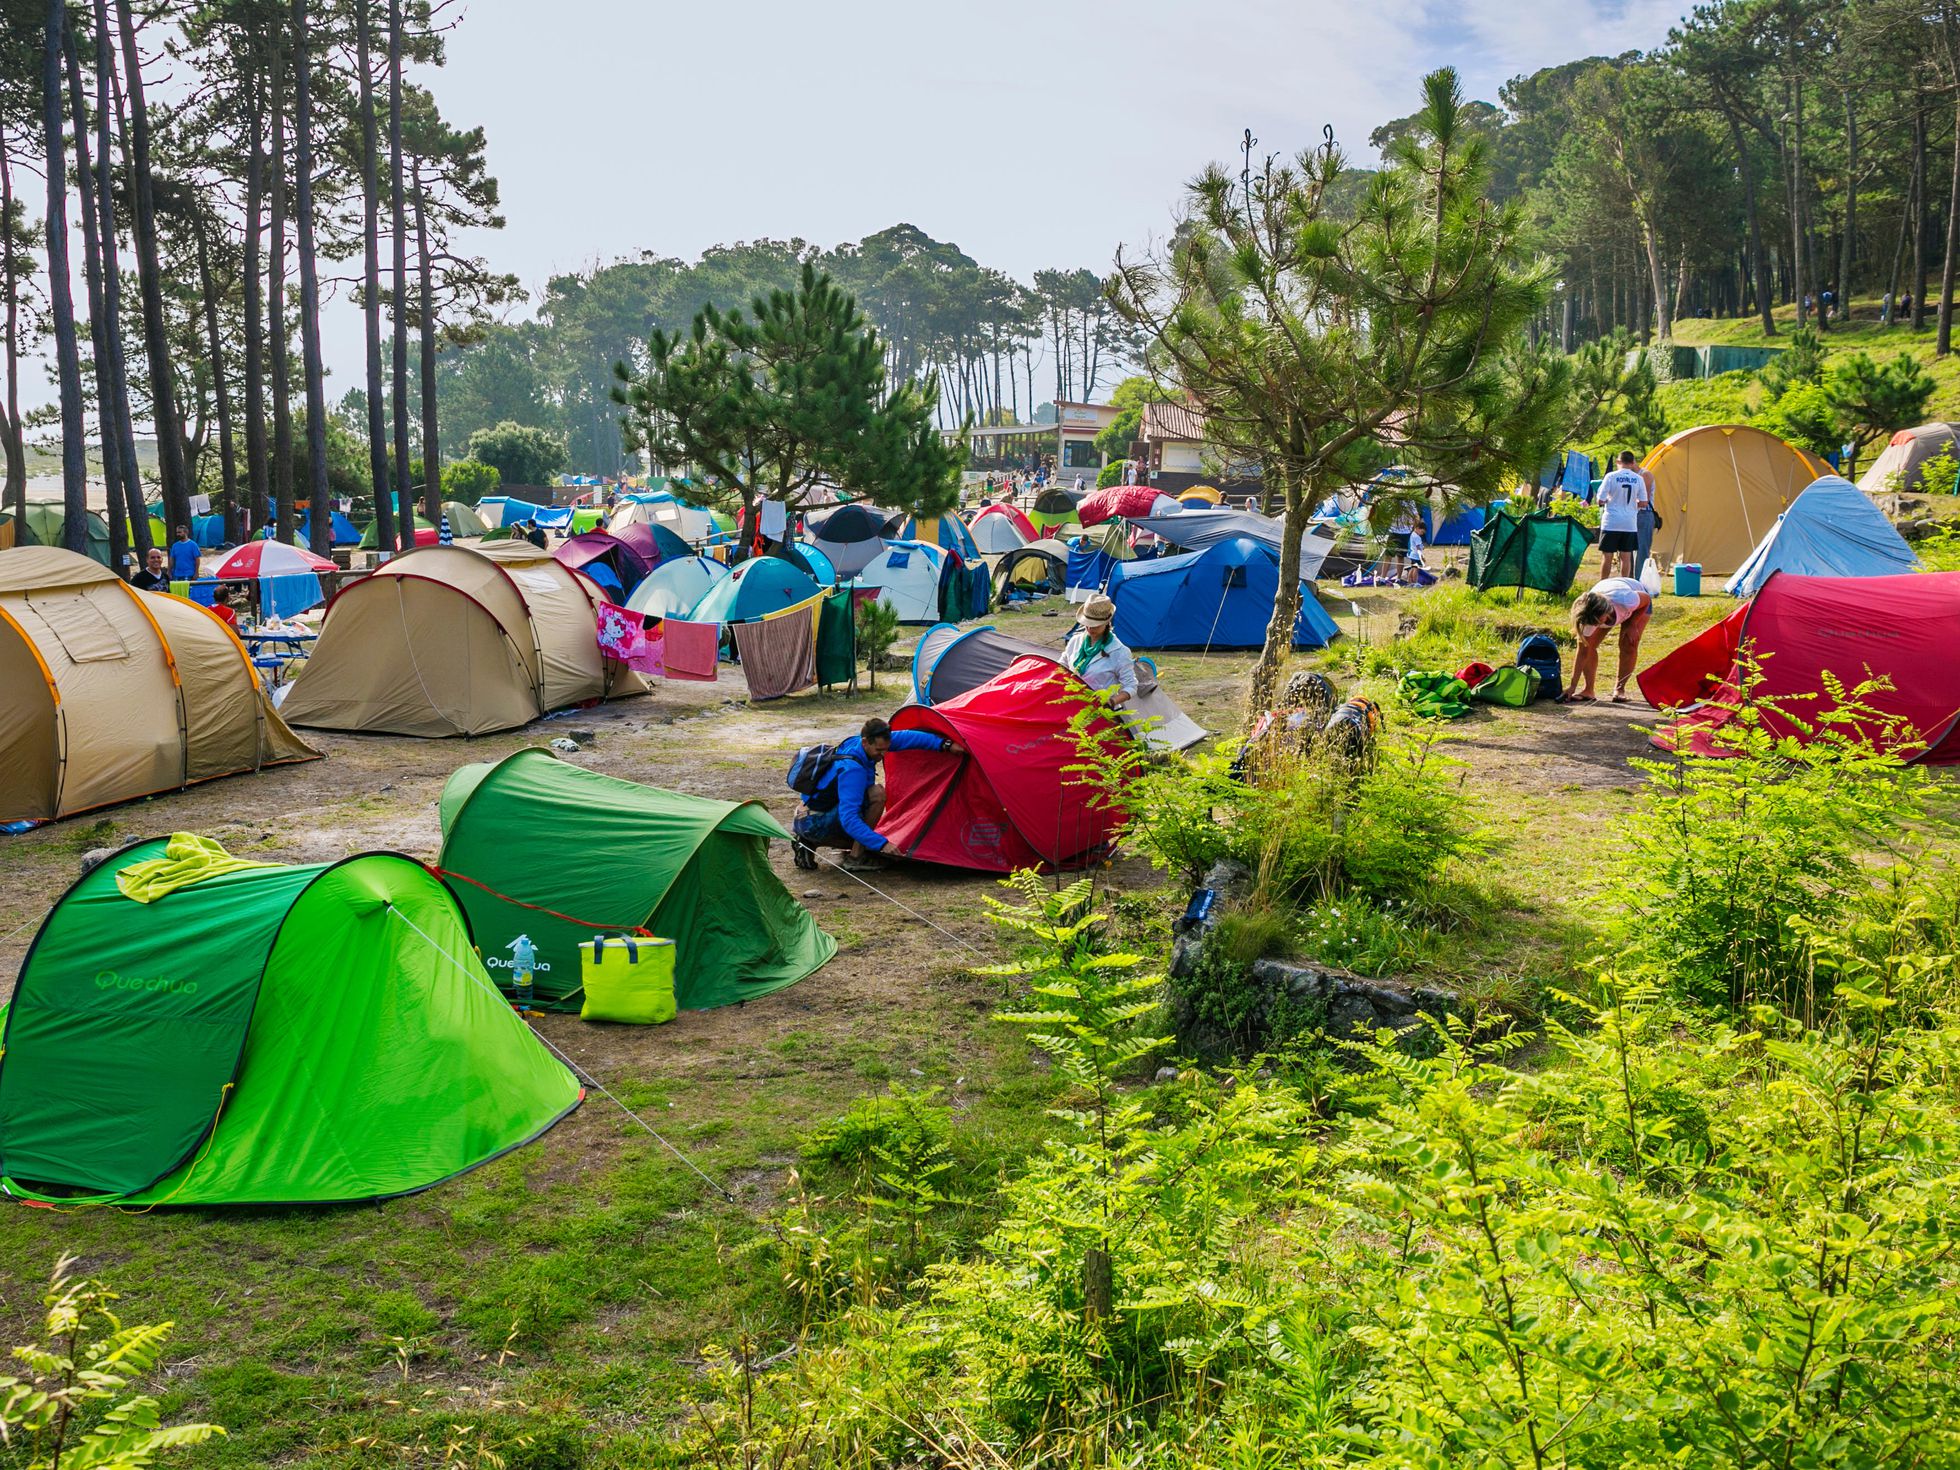 El 'camping' vuelve a seducir a los turistas, Negocios